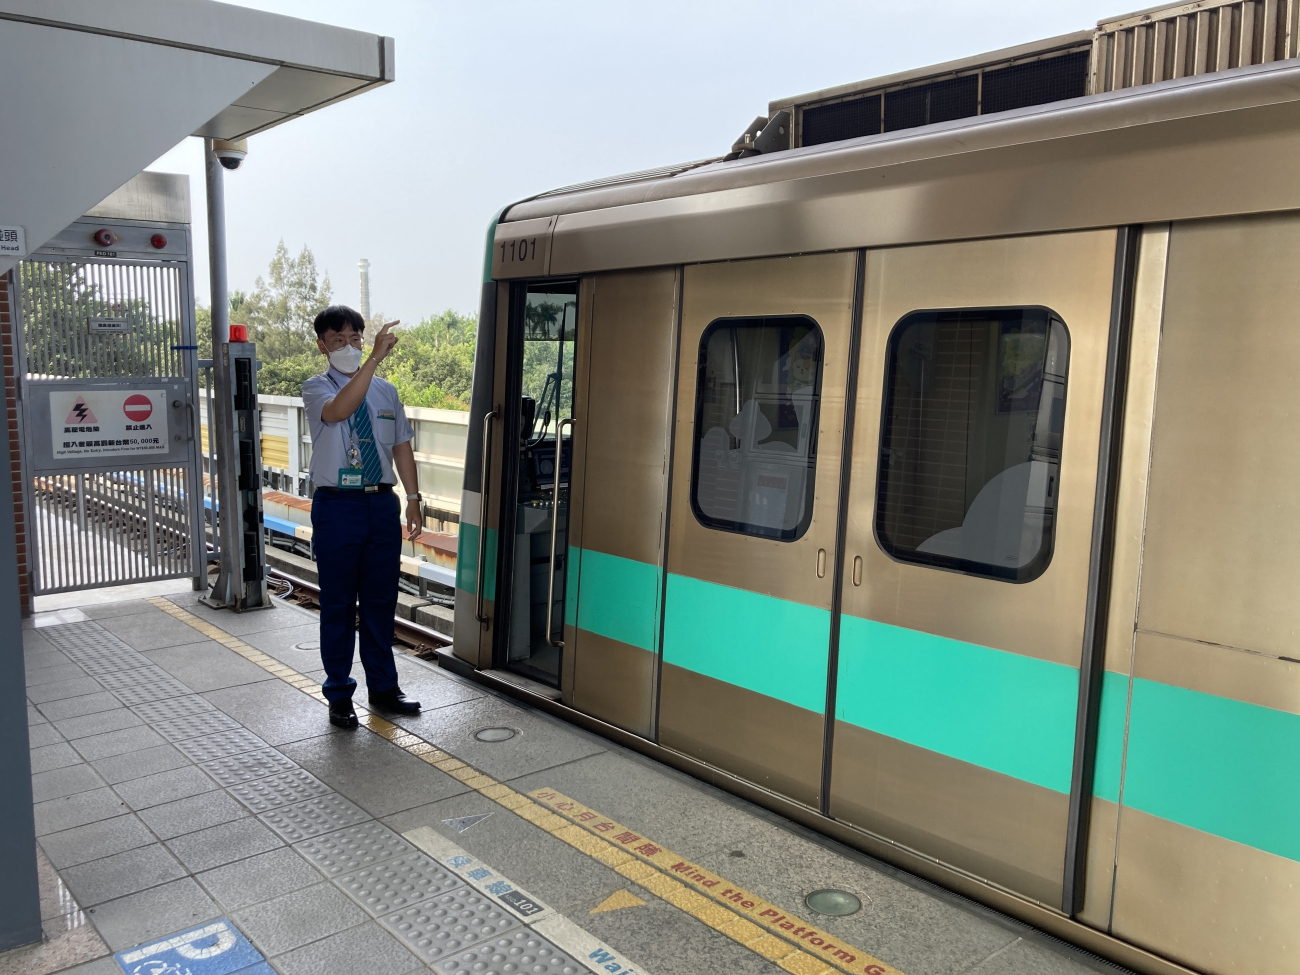 Гаосюн, Kaohsiung MRT Train 高雄捷运高运量电联车 № 111A; Гаосюн — Красная линия метро